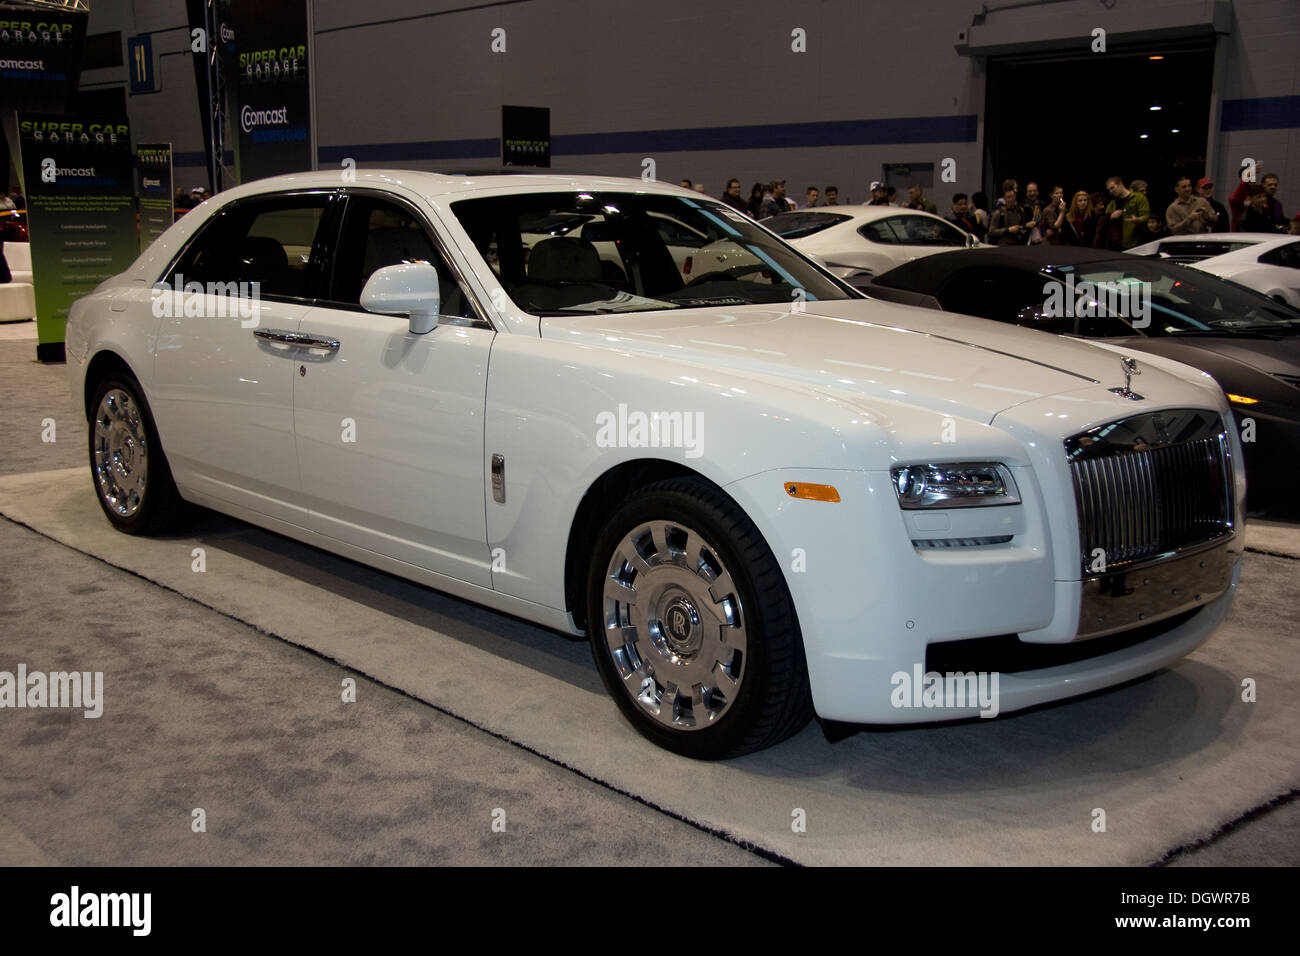 Rolls-Royce Ghost.L'auto de Chicago 2013 Banque D'Images